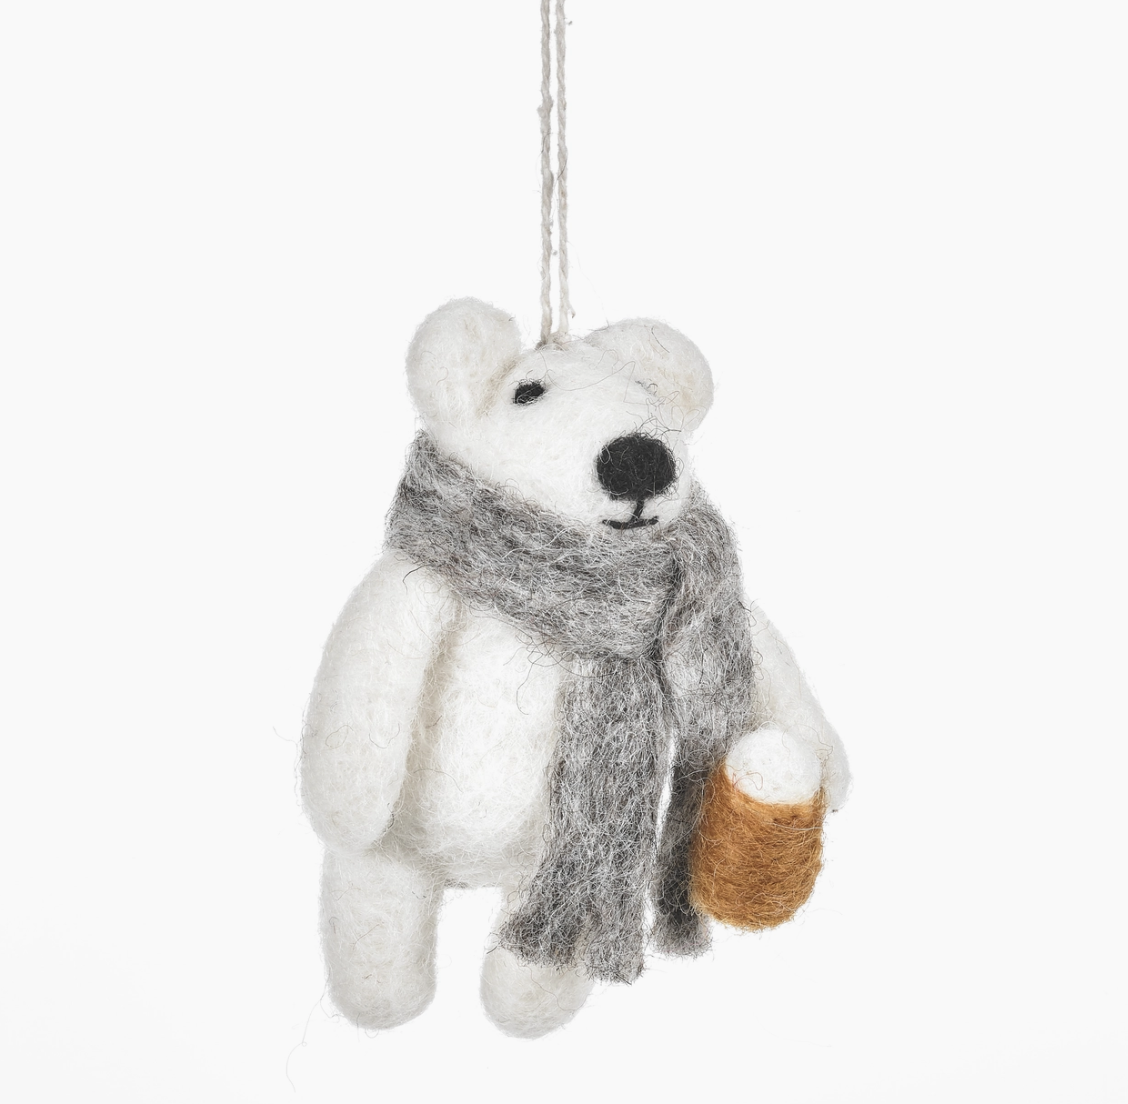 Drinkin' Polar Bear - Handmade Felt Ornament